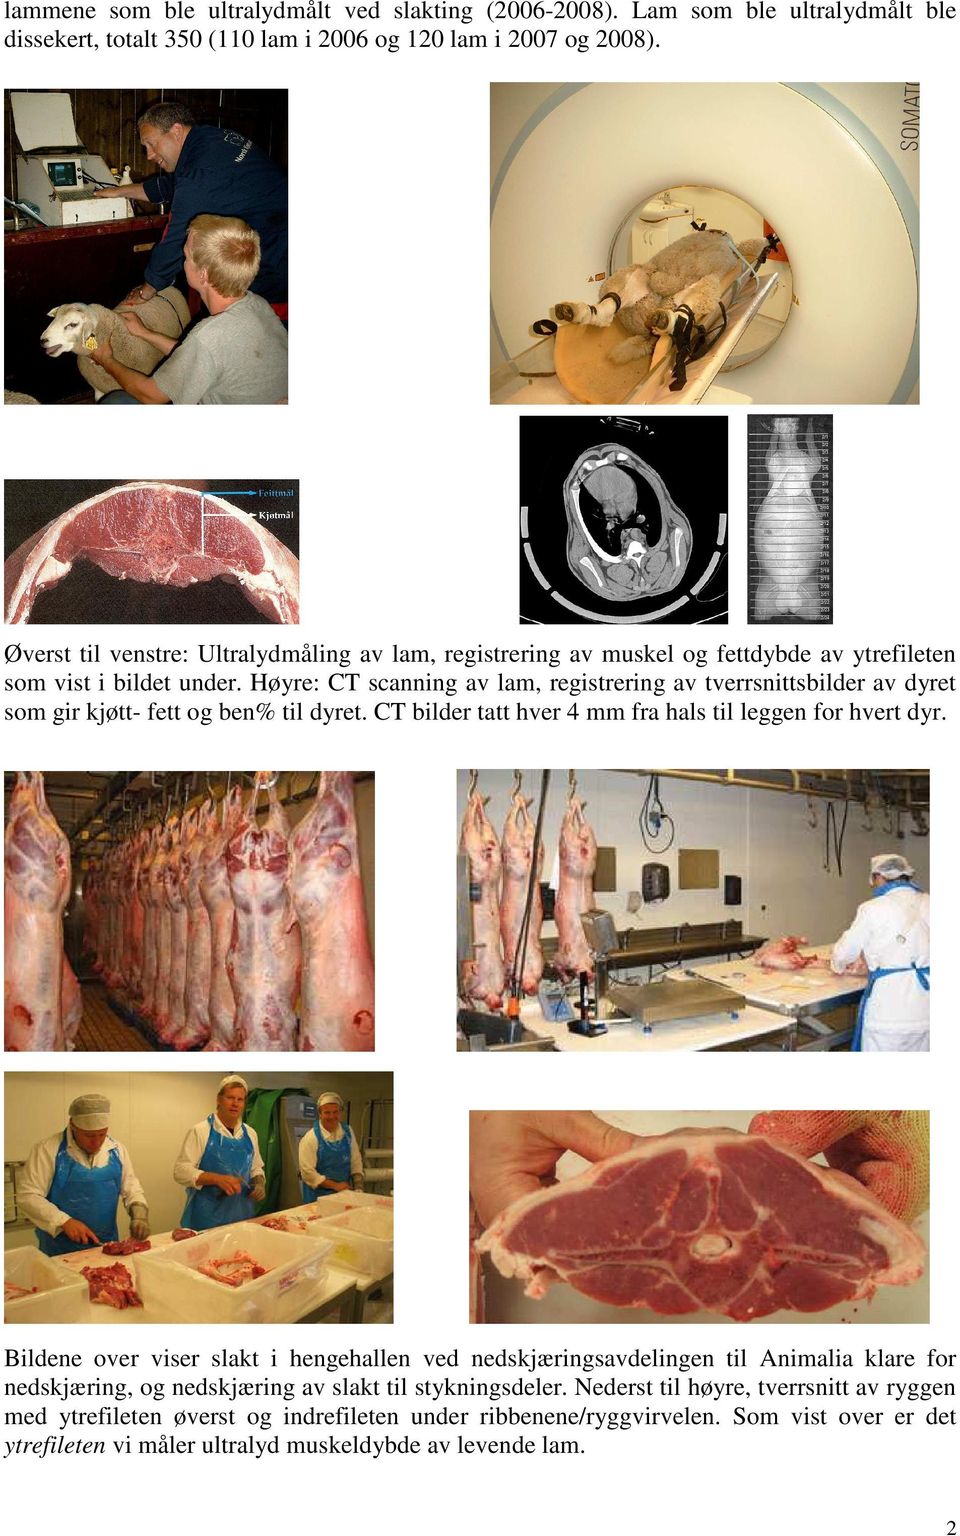 Høyre: CT scanning av lam, registrering av tverrsnittsbilder av dyret som gir kjøtt- fett og ben% til dyret. CT bilder tatt hver 4 mm fra hals til leggen for hvert dyr.